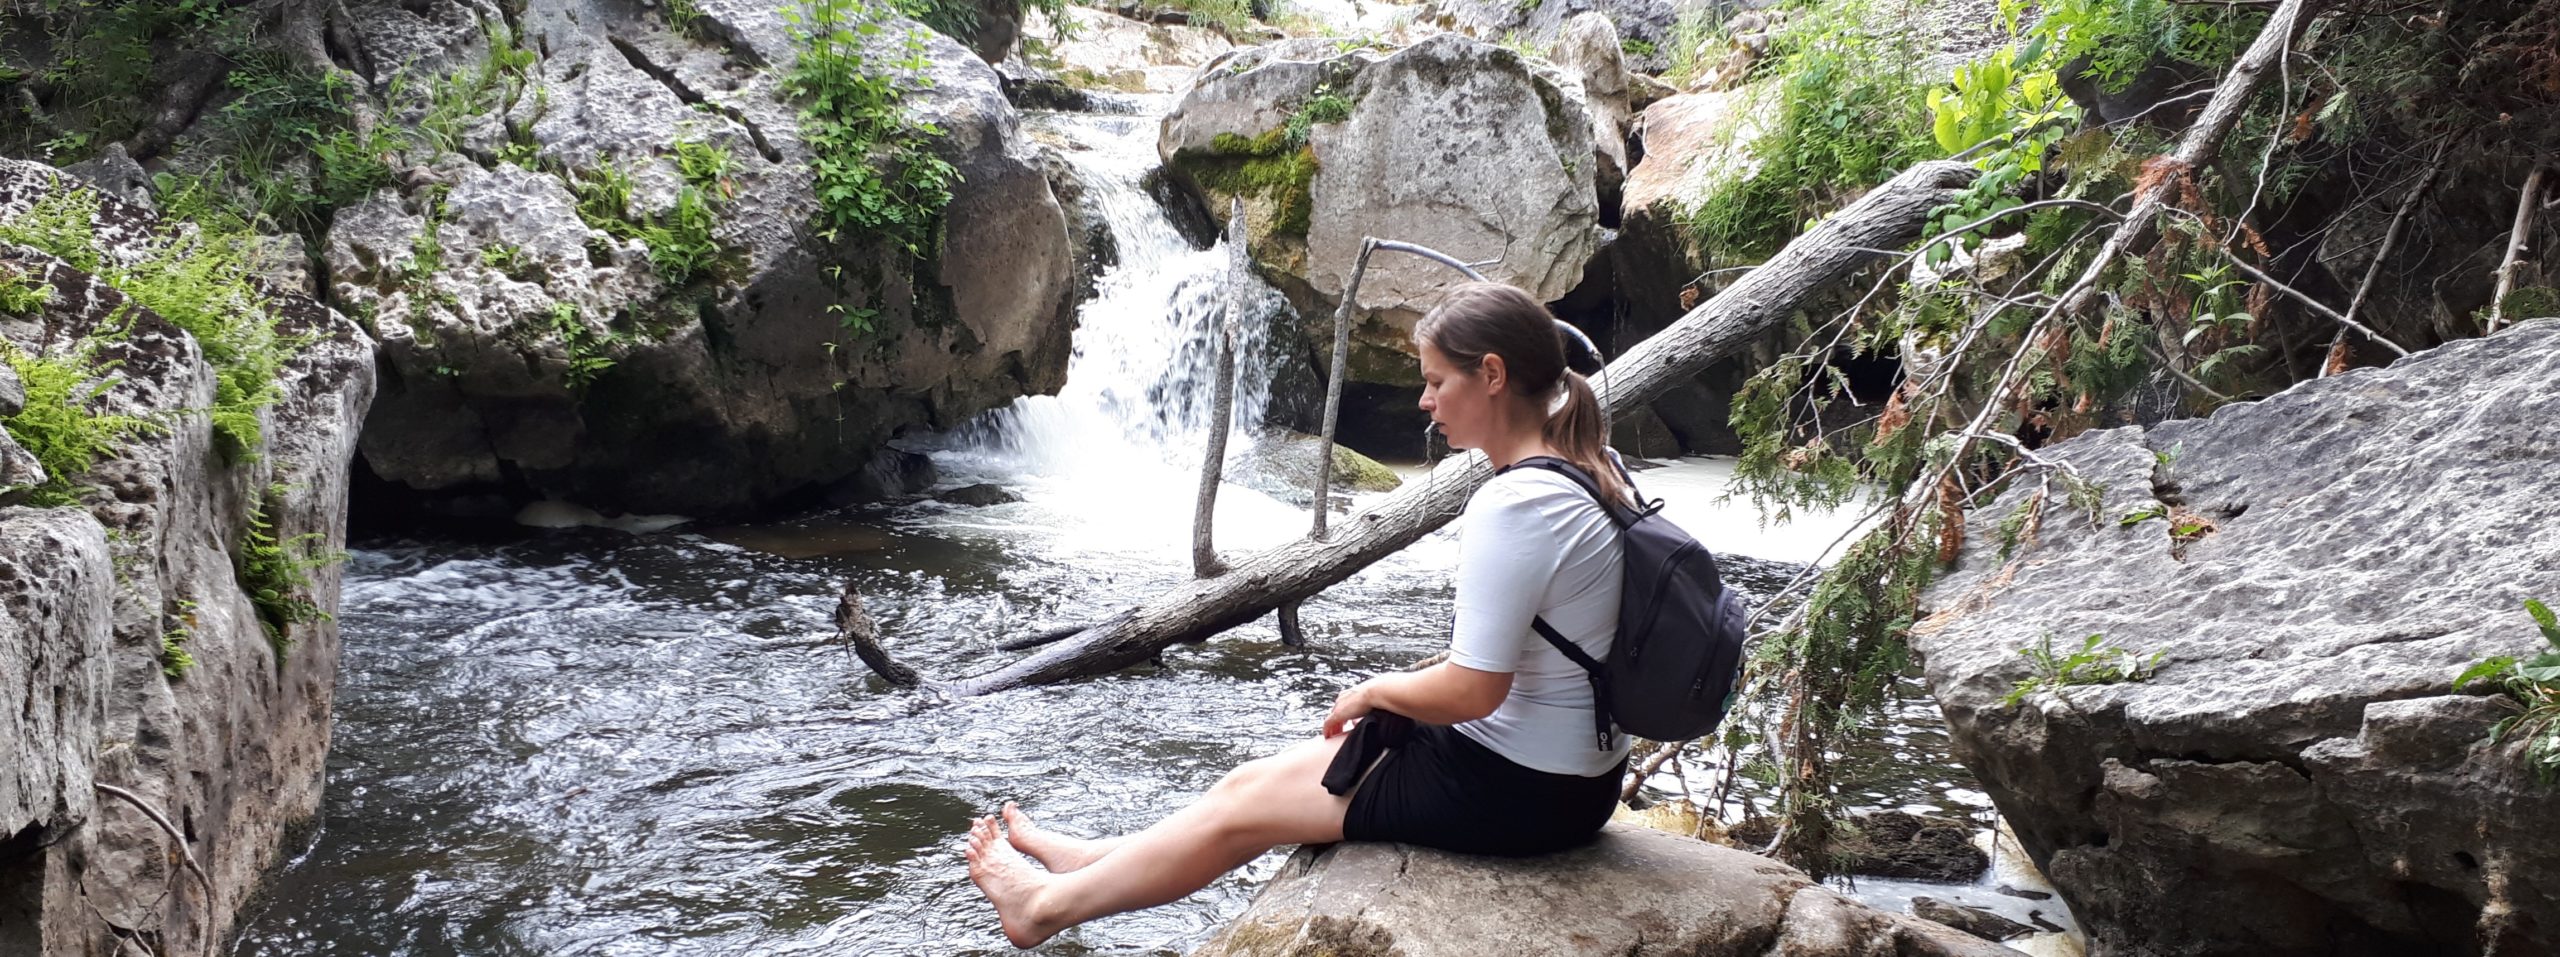 woman barefoot sitting beside waterfall